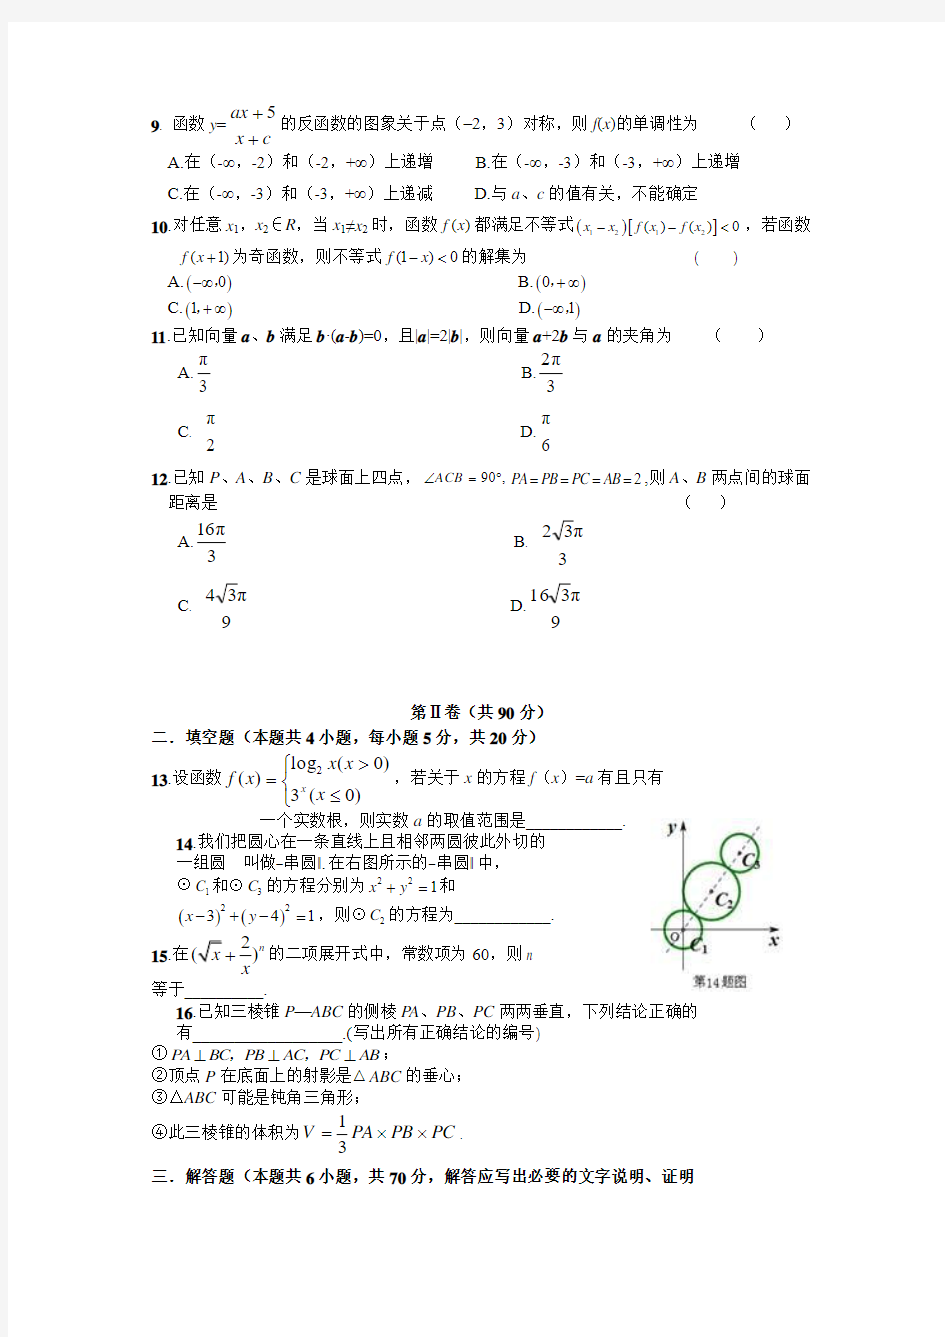 2011唐山一中高考冲刺热身卷(二)数学(文)试题及答案